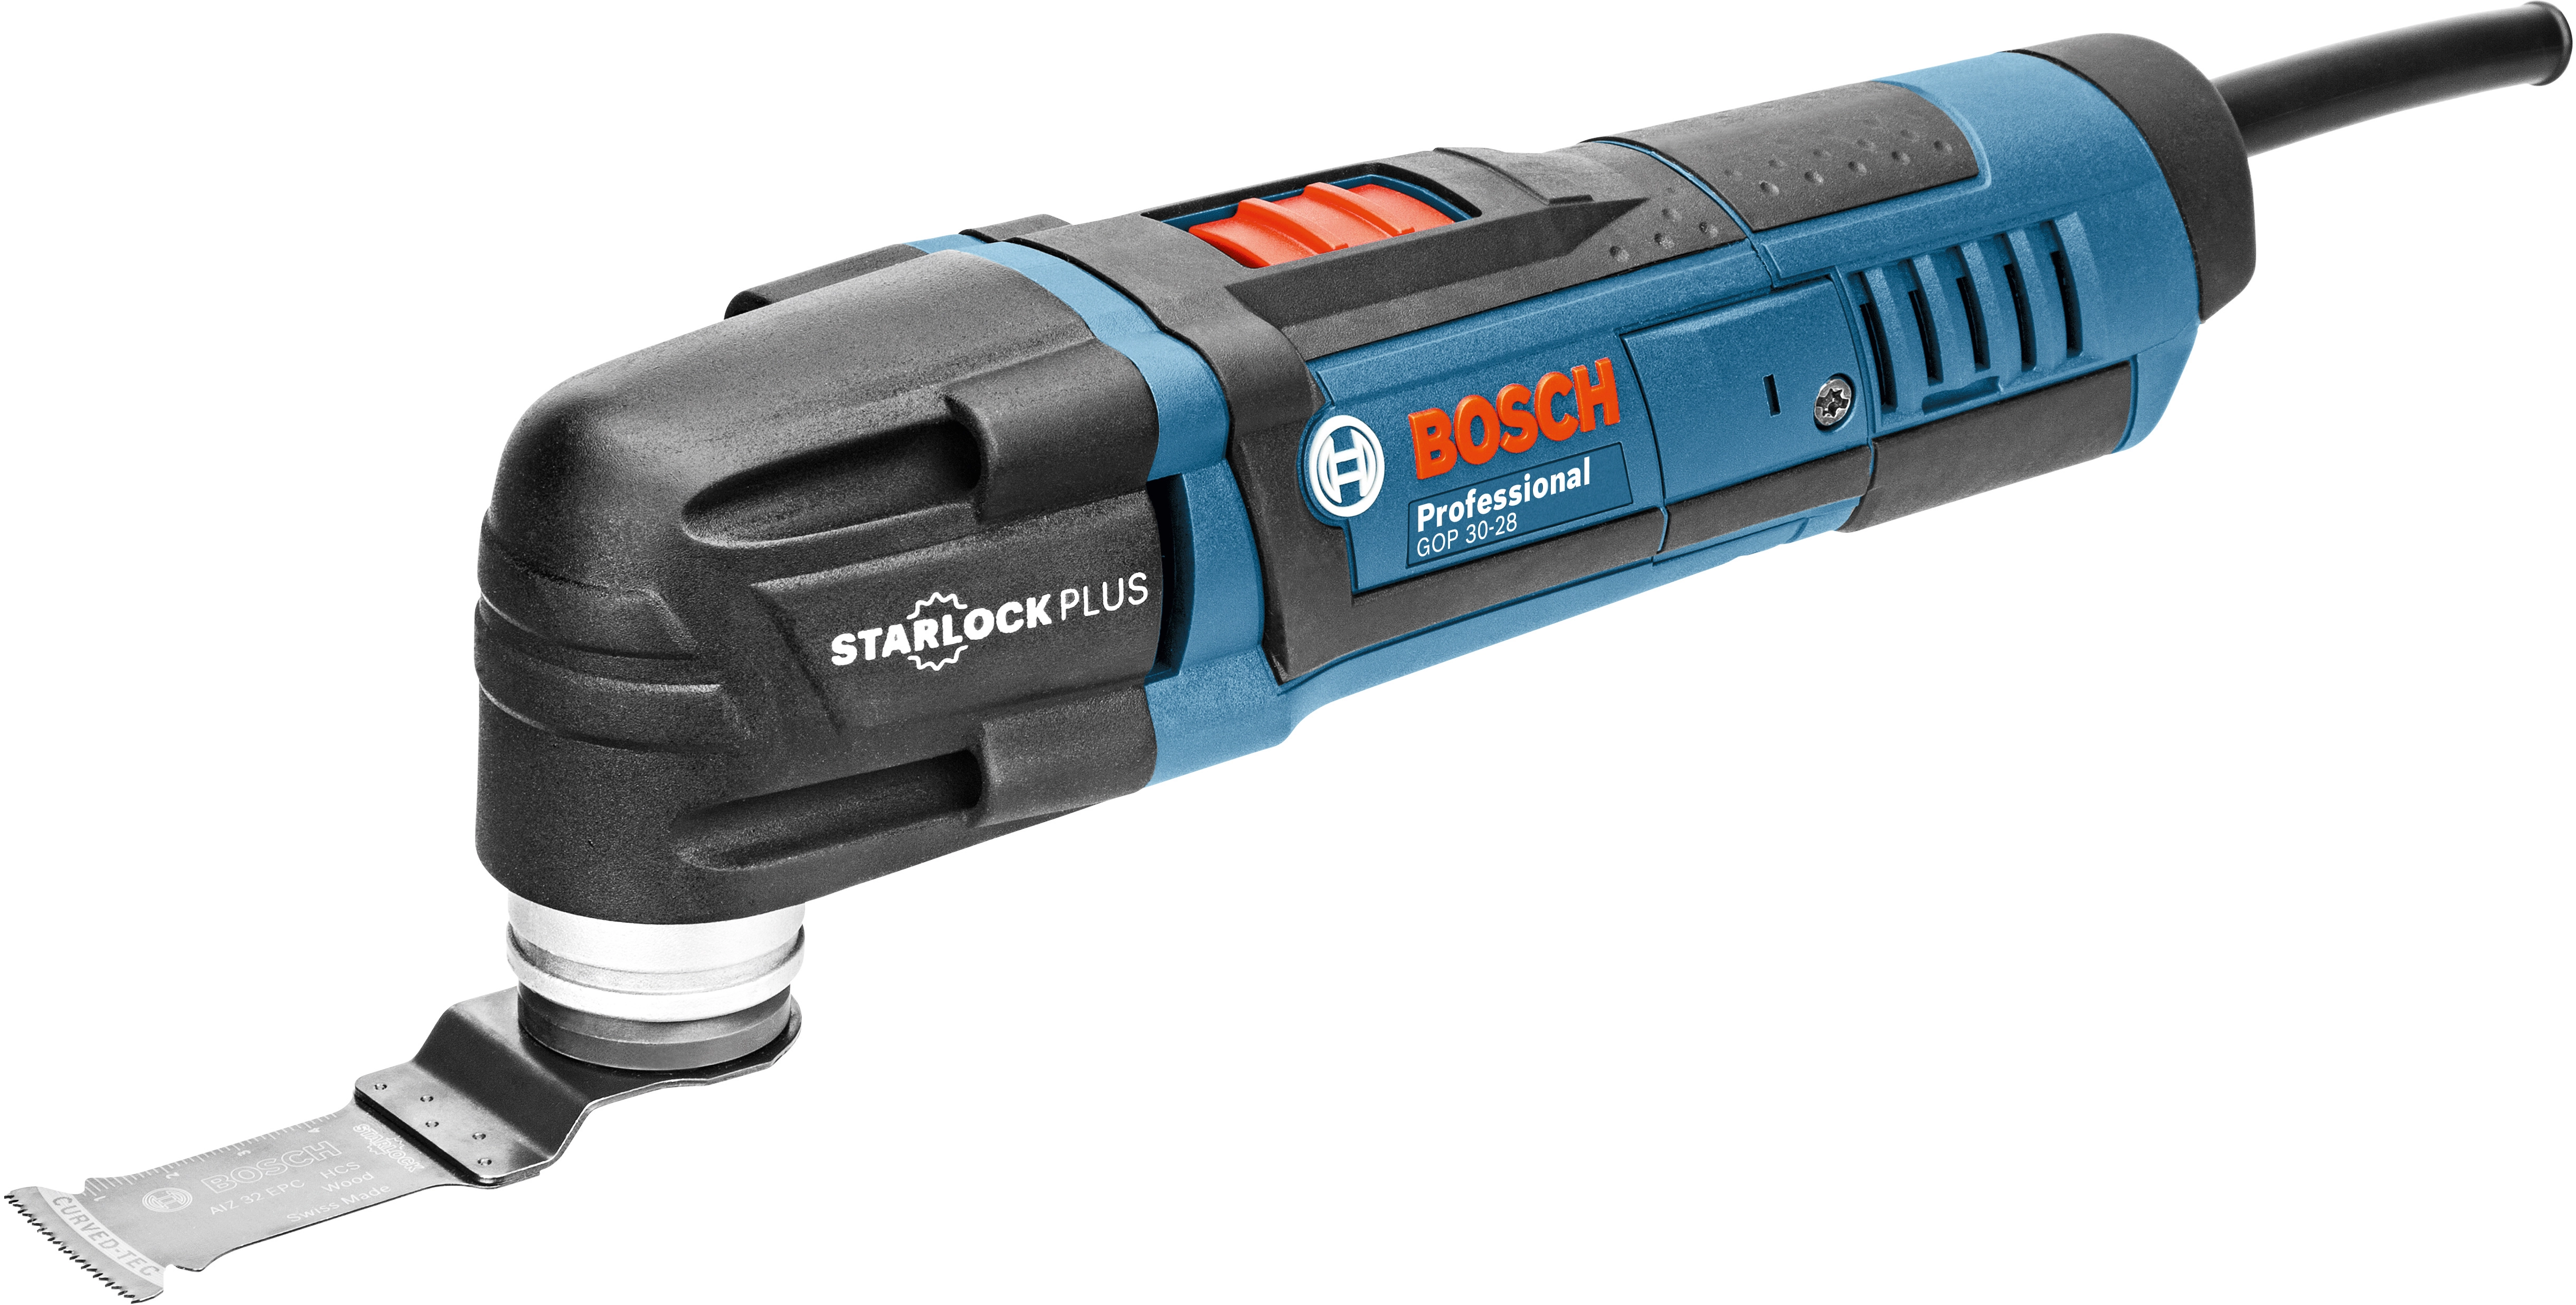 Professional 30-28 Bosch 300 GOP W Multi-Cutter